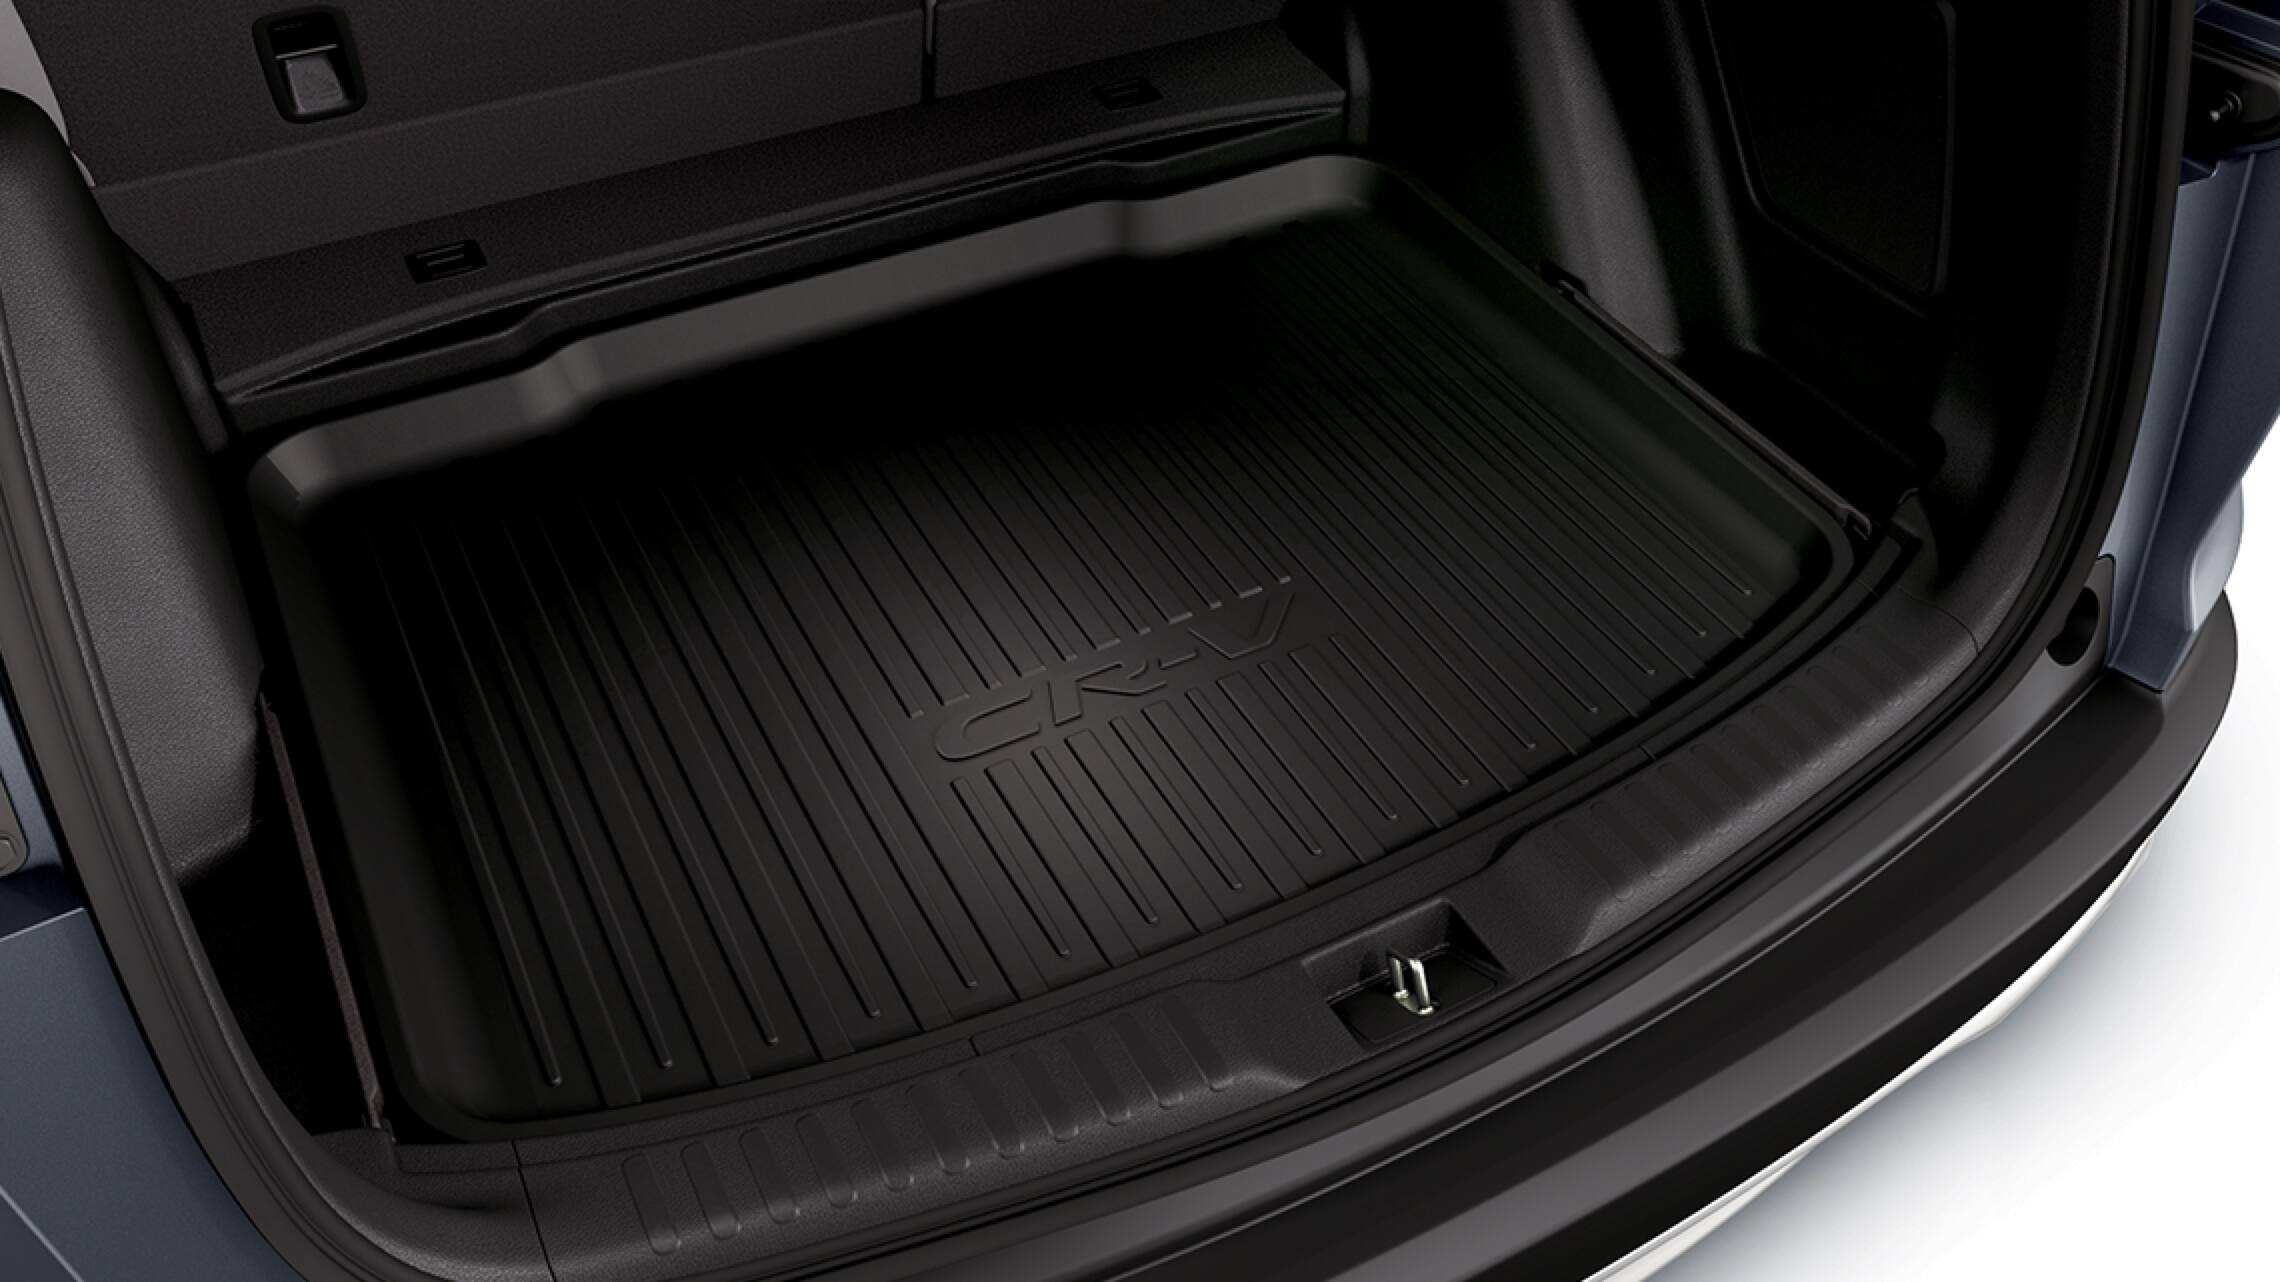 2019 Honda CR-V interior with Honda Genuine Accessory cargo tray.